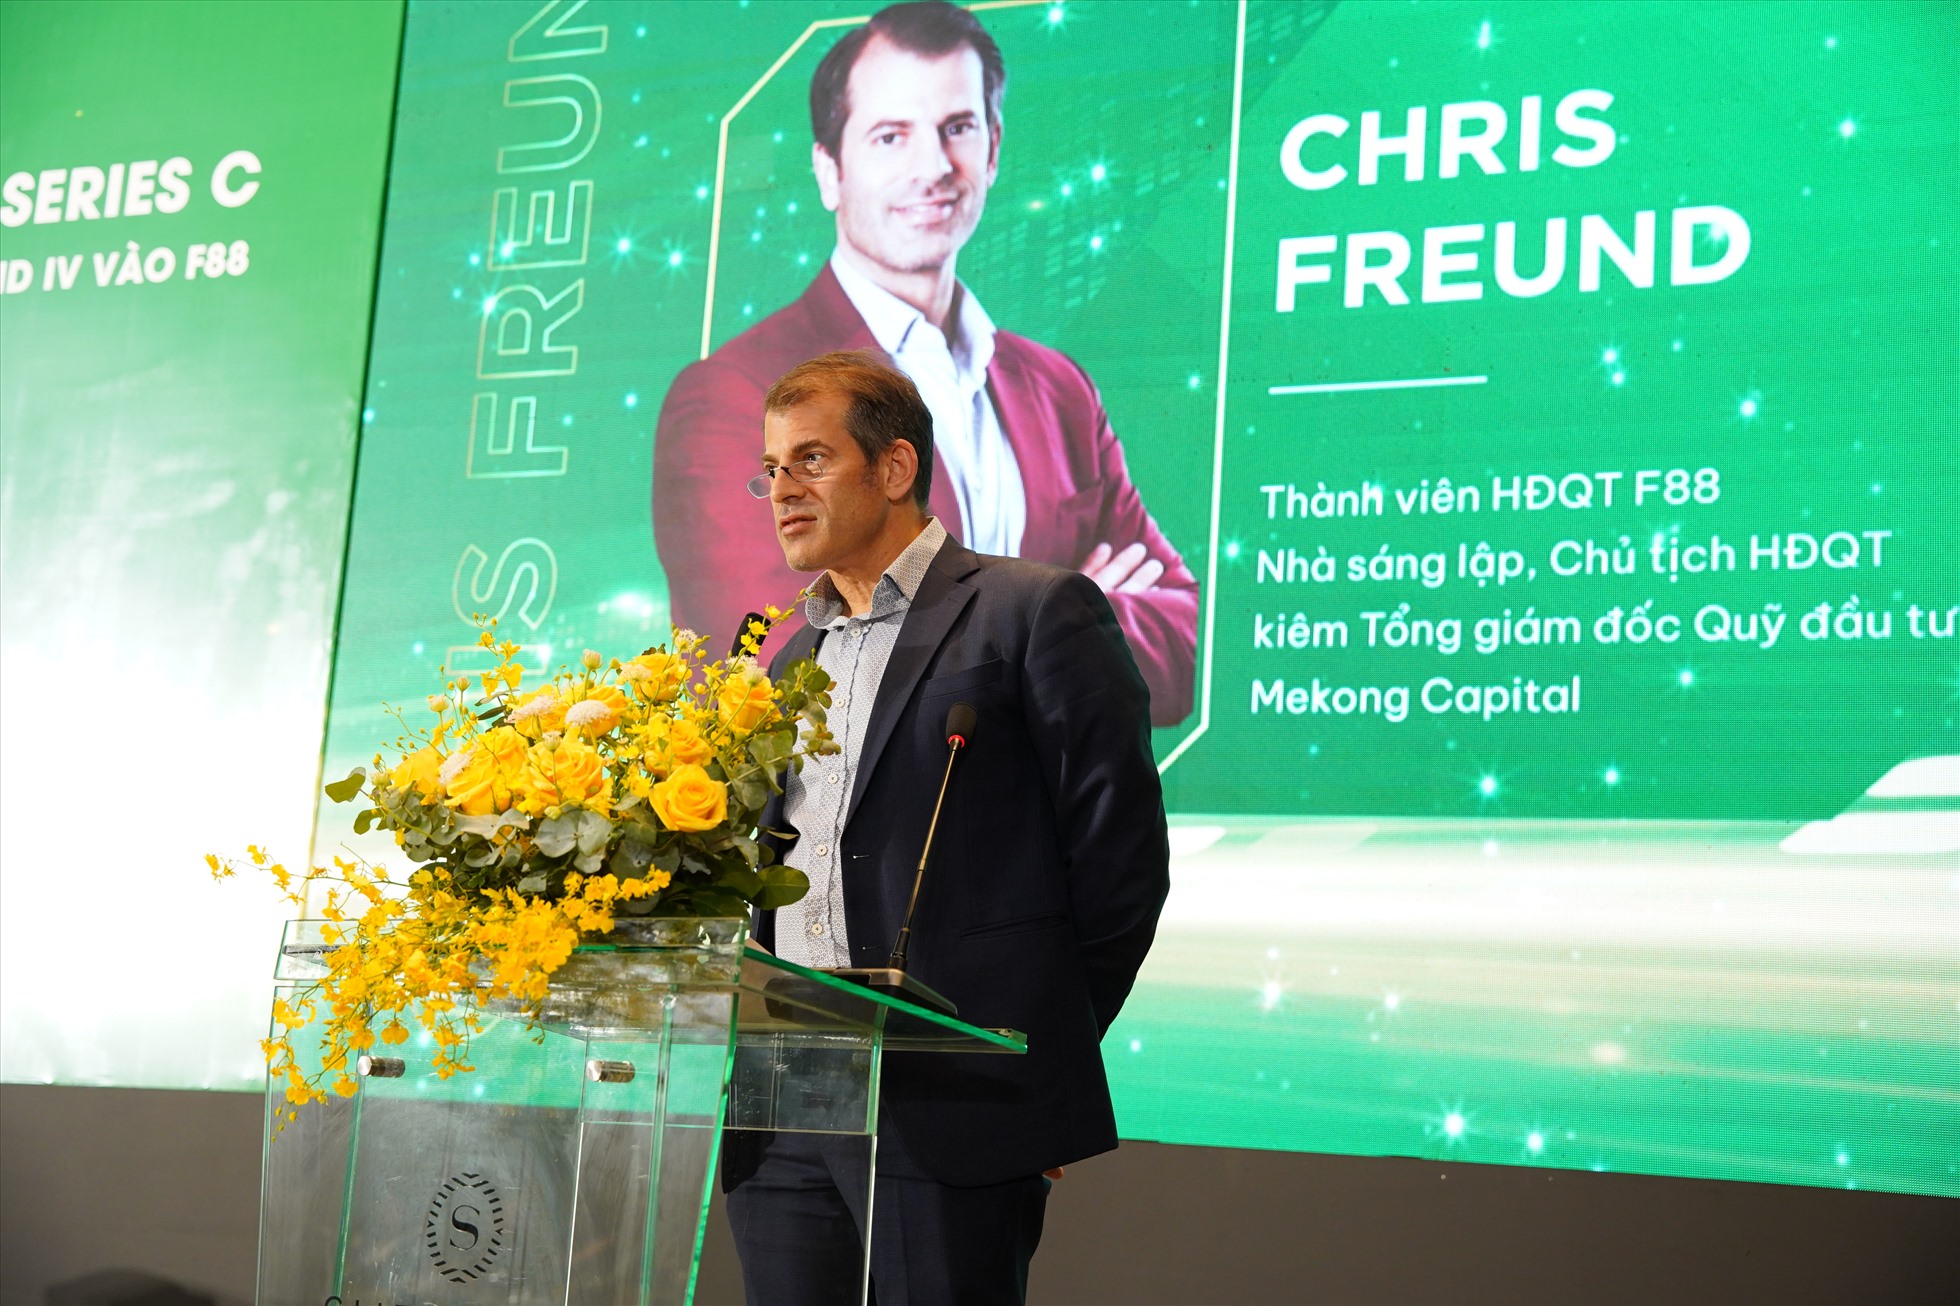 Ông Chris Freund – Nhà sáng lập kiêm Tổng giám đốc quỹ Mekong Enterprise Fund IV - thành viên HĐQT F88 phát biểu. Nguồn: F88